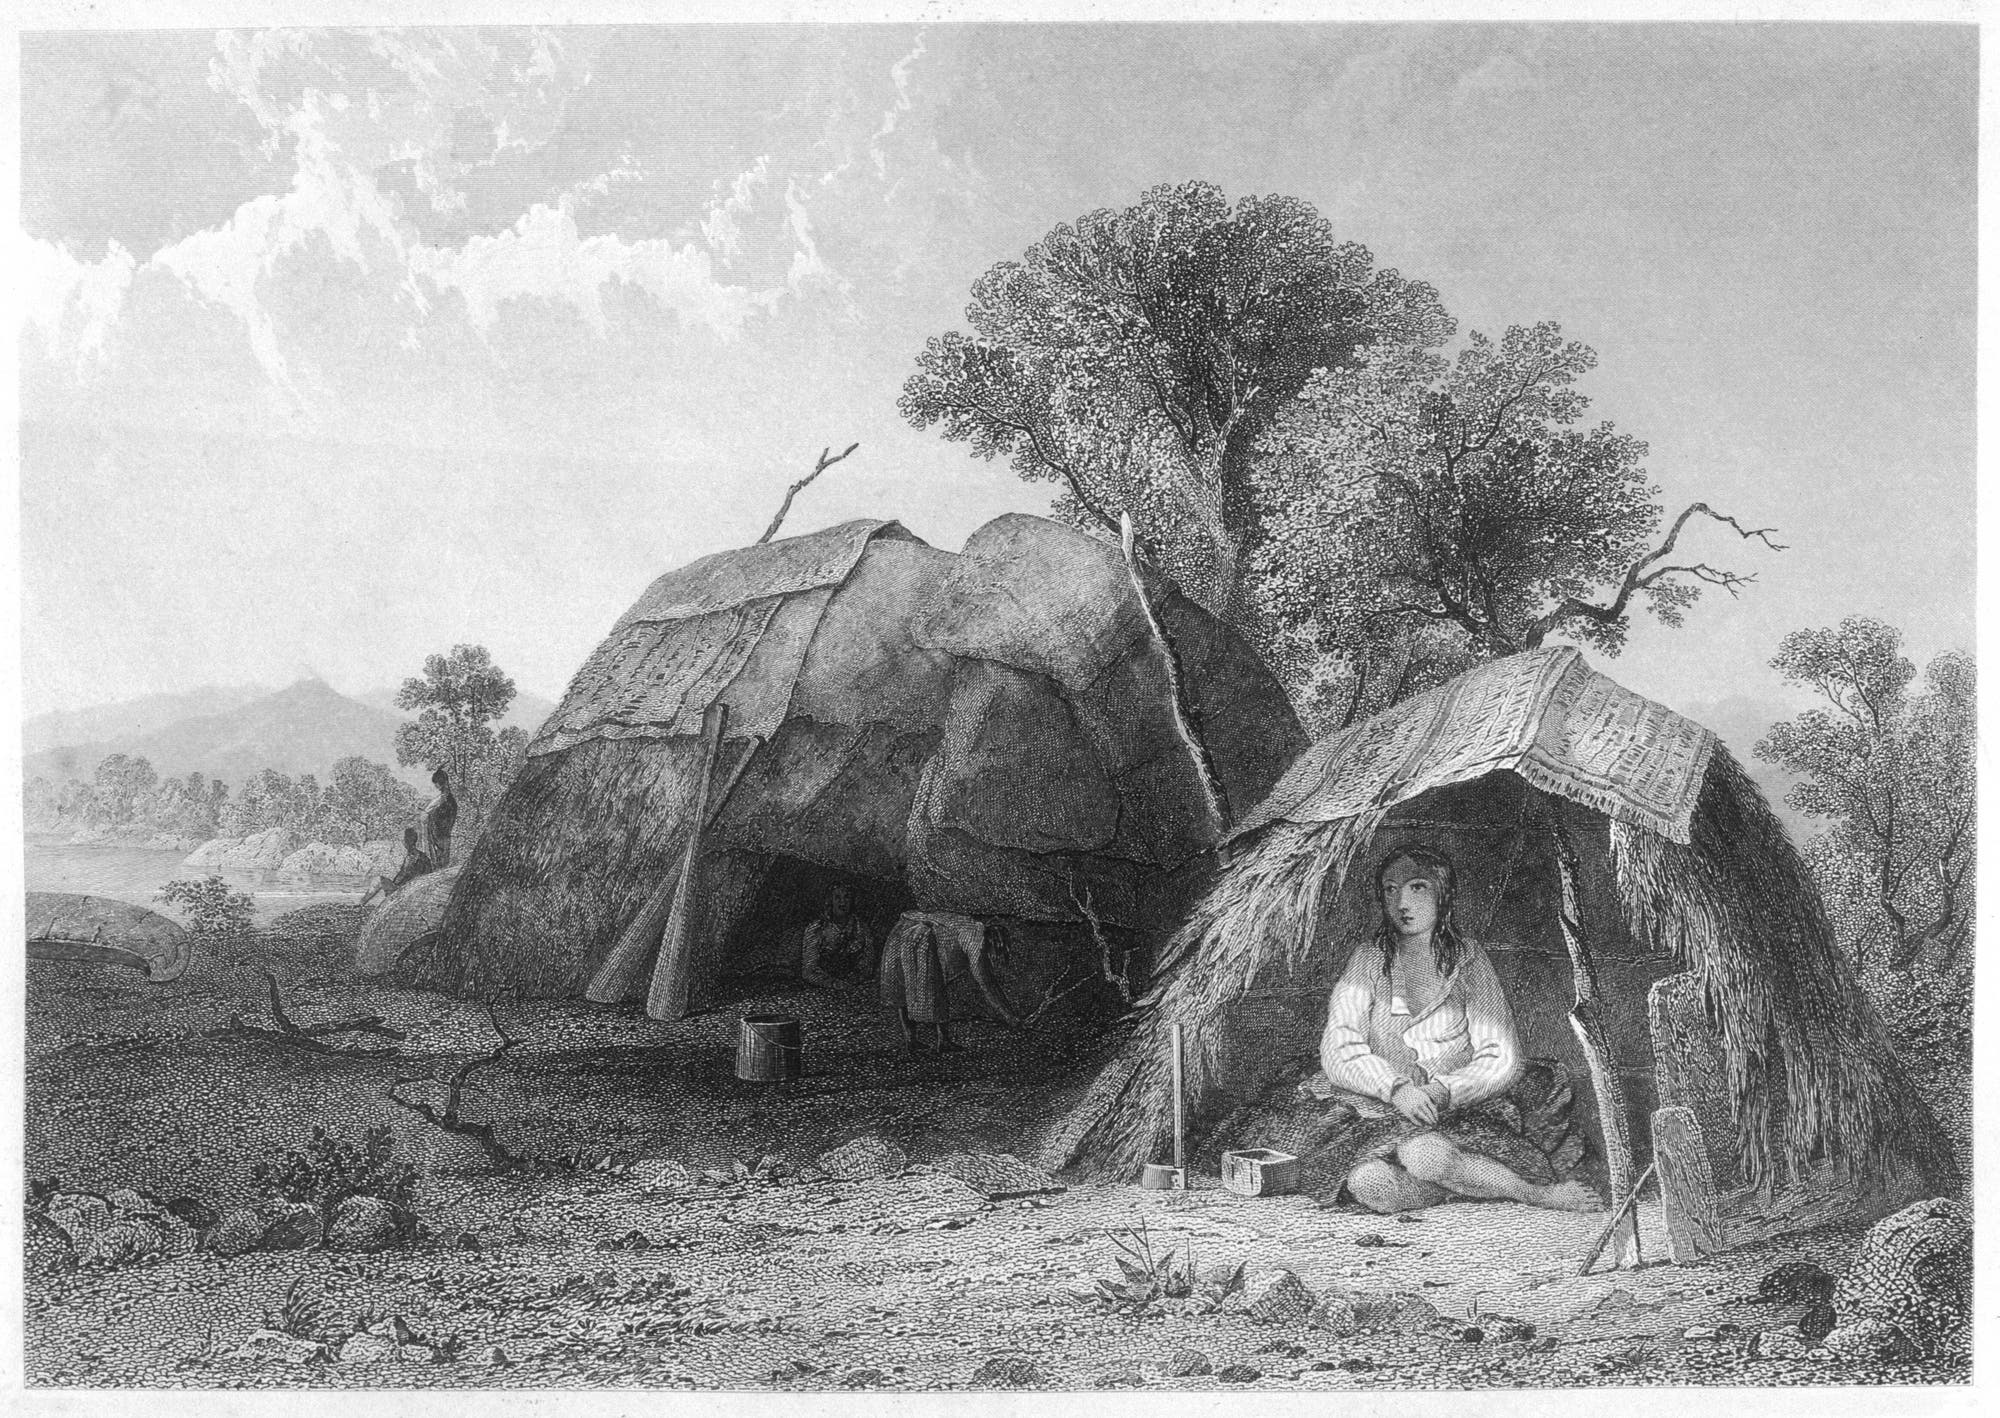 Historische Zeichnung einer amerikanischen Ureinwohnerin, die allein in einem kleinen Zelt sitzt